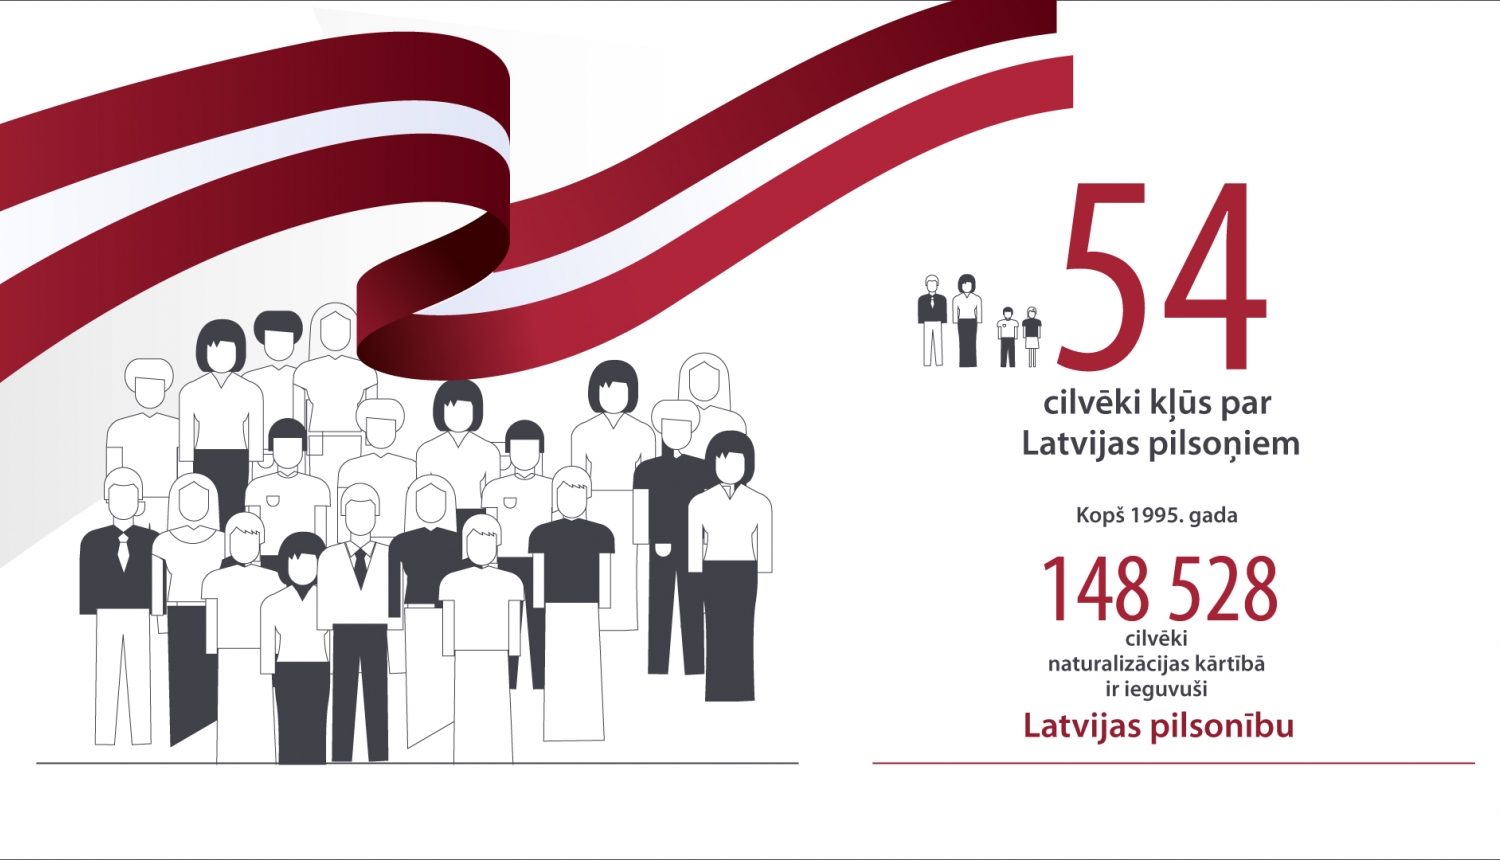 54 cilvēki kļūst par Latvijas pilsoņiem